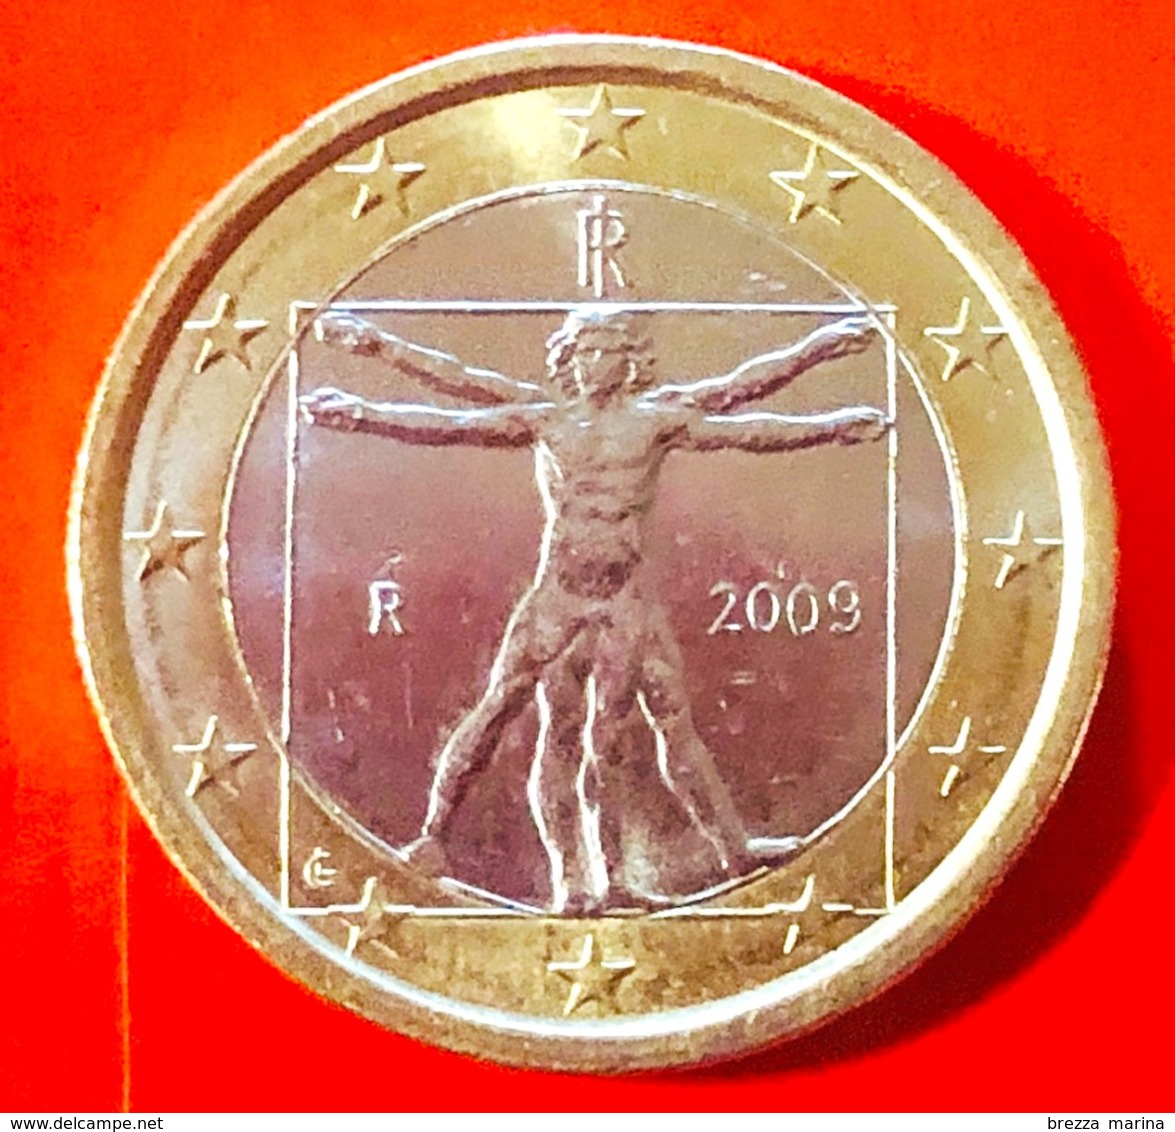 ITALIA - 2009 - Moneta - Leonardo Da Vinci, Proporzioni Ideali Del Corpo Umano - Euro - 1.00 - Italia